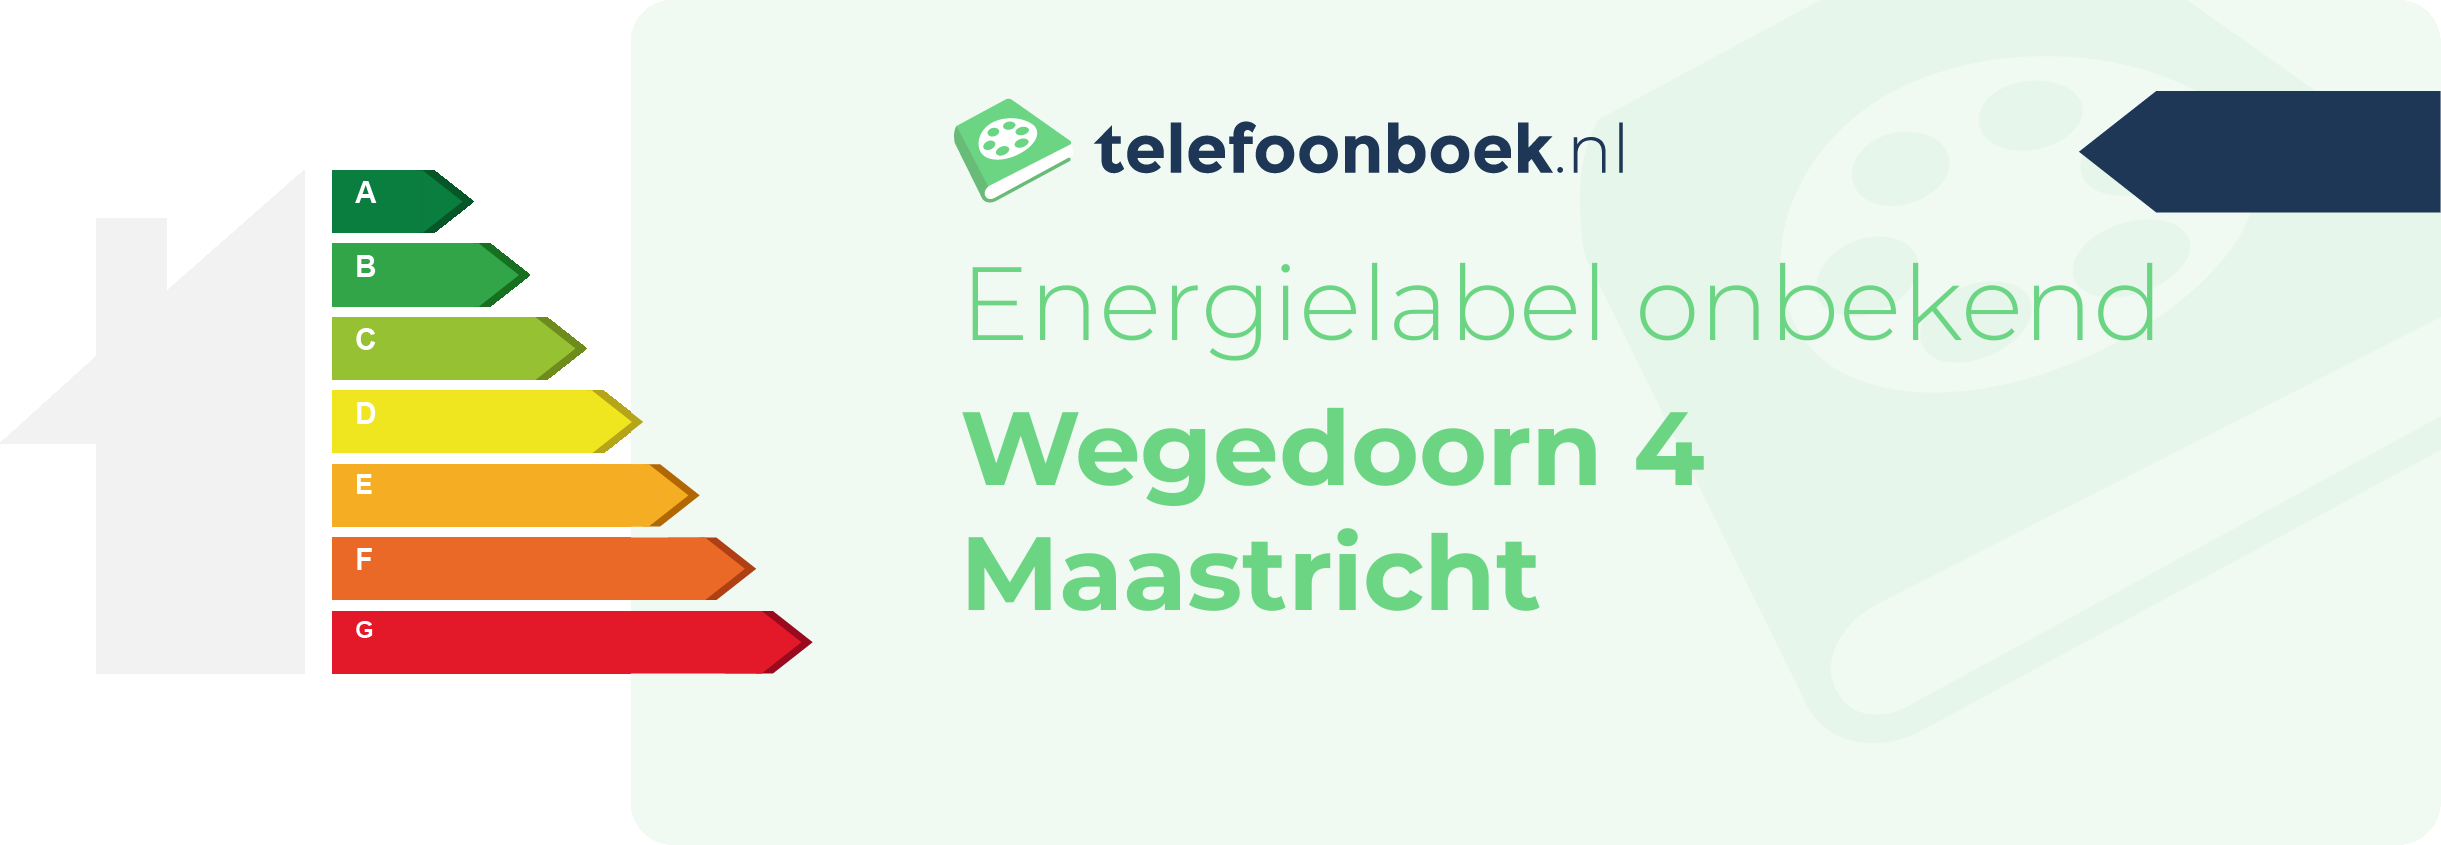 Energielabel Wegedoorn 4 Maastricht